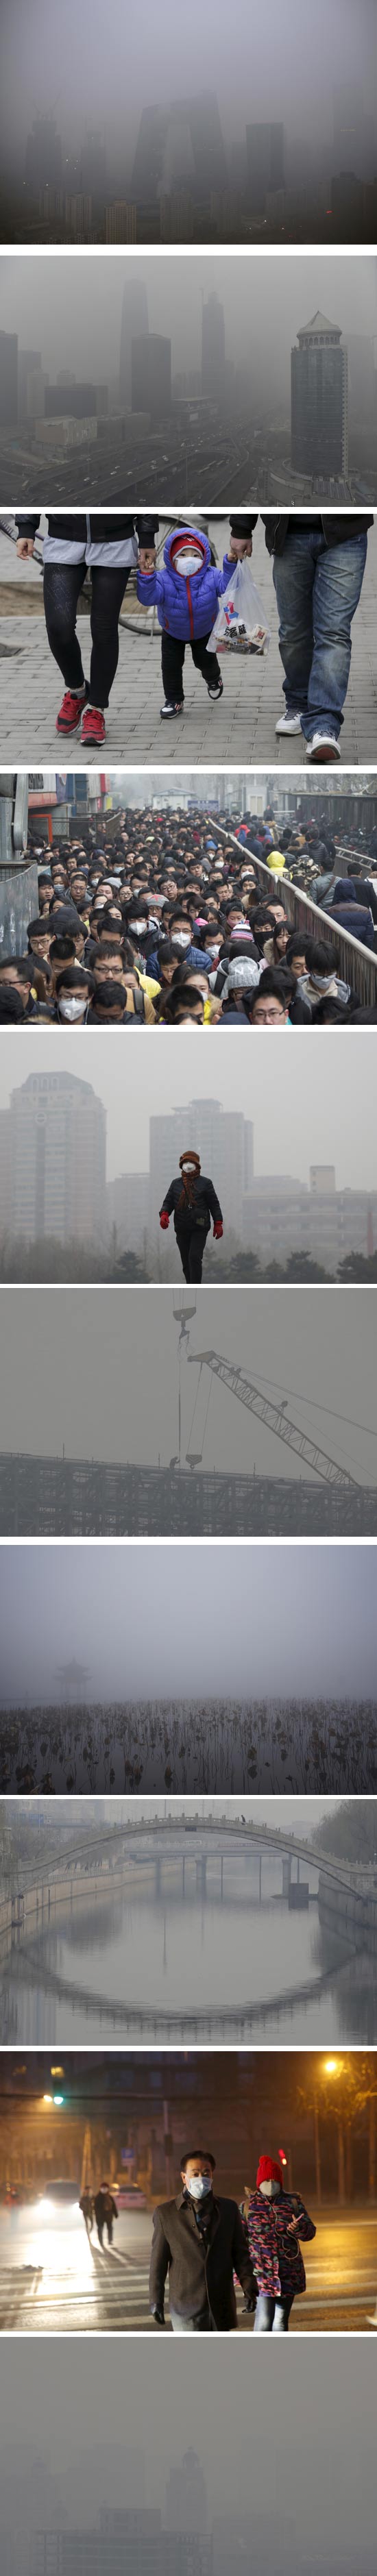 זיהום אוויר בבייג'ין / צילום: רויטרס